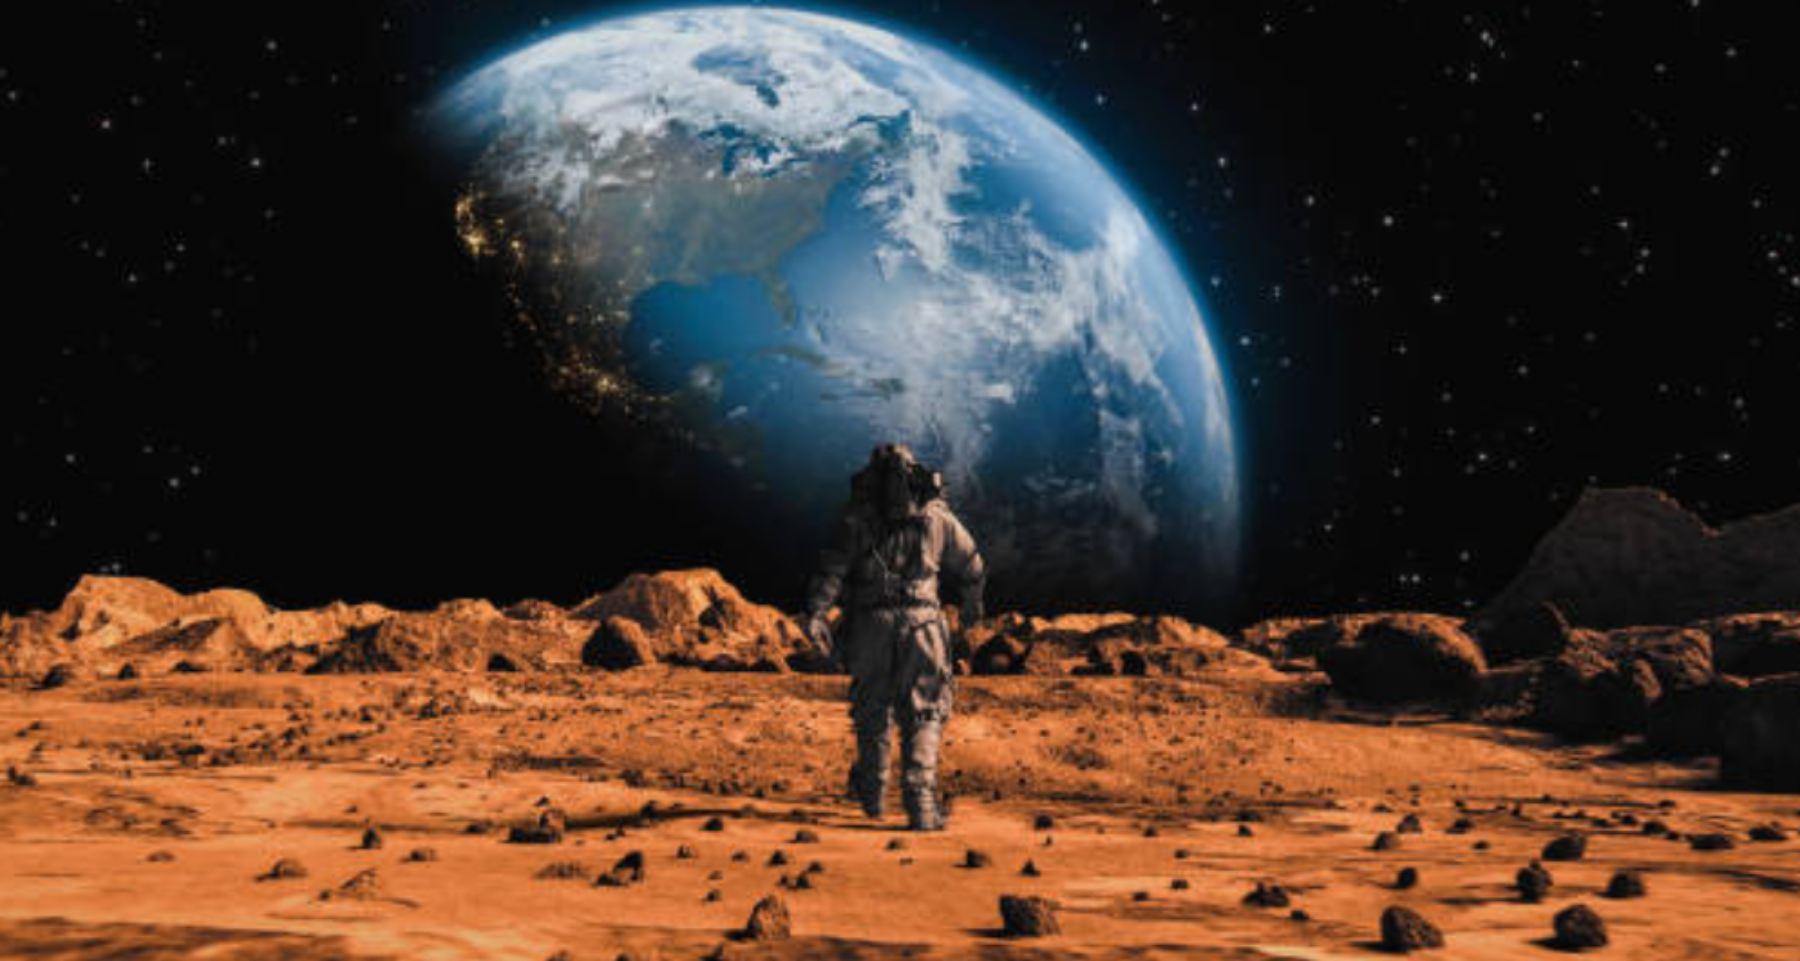 Las 10 curiosidades más increíbles de Marte que no conocías